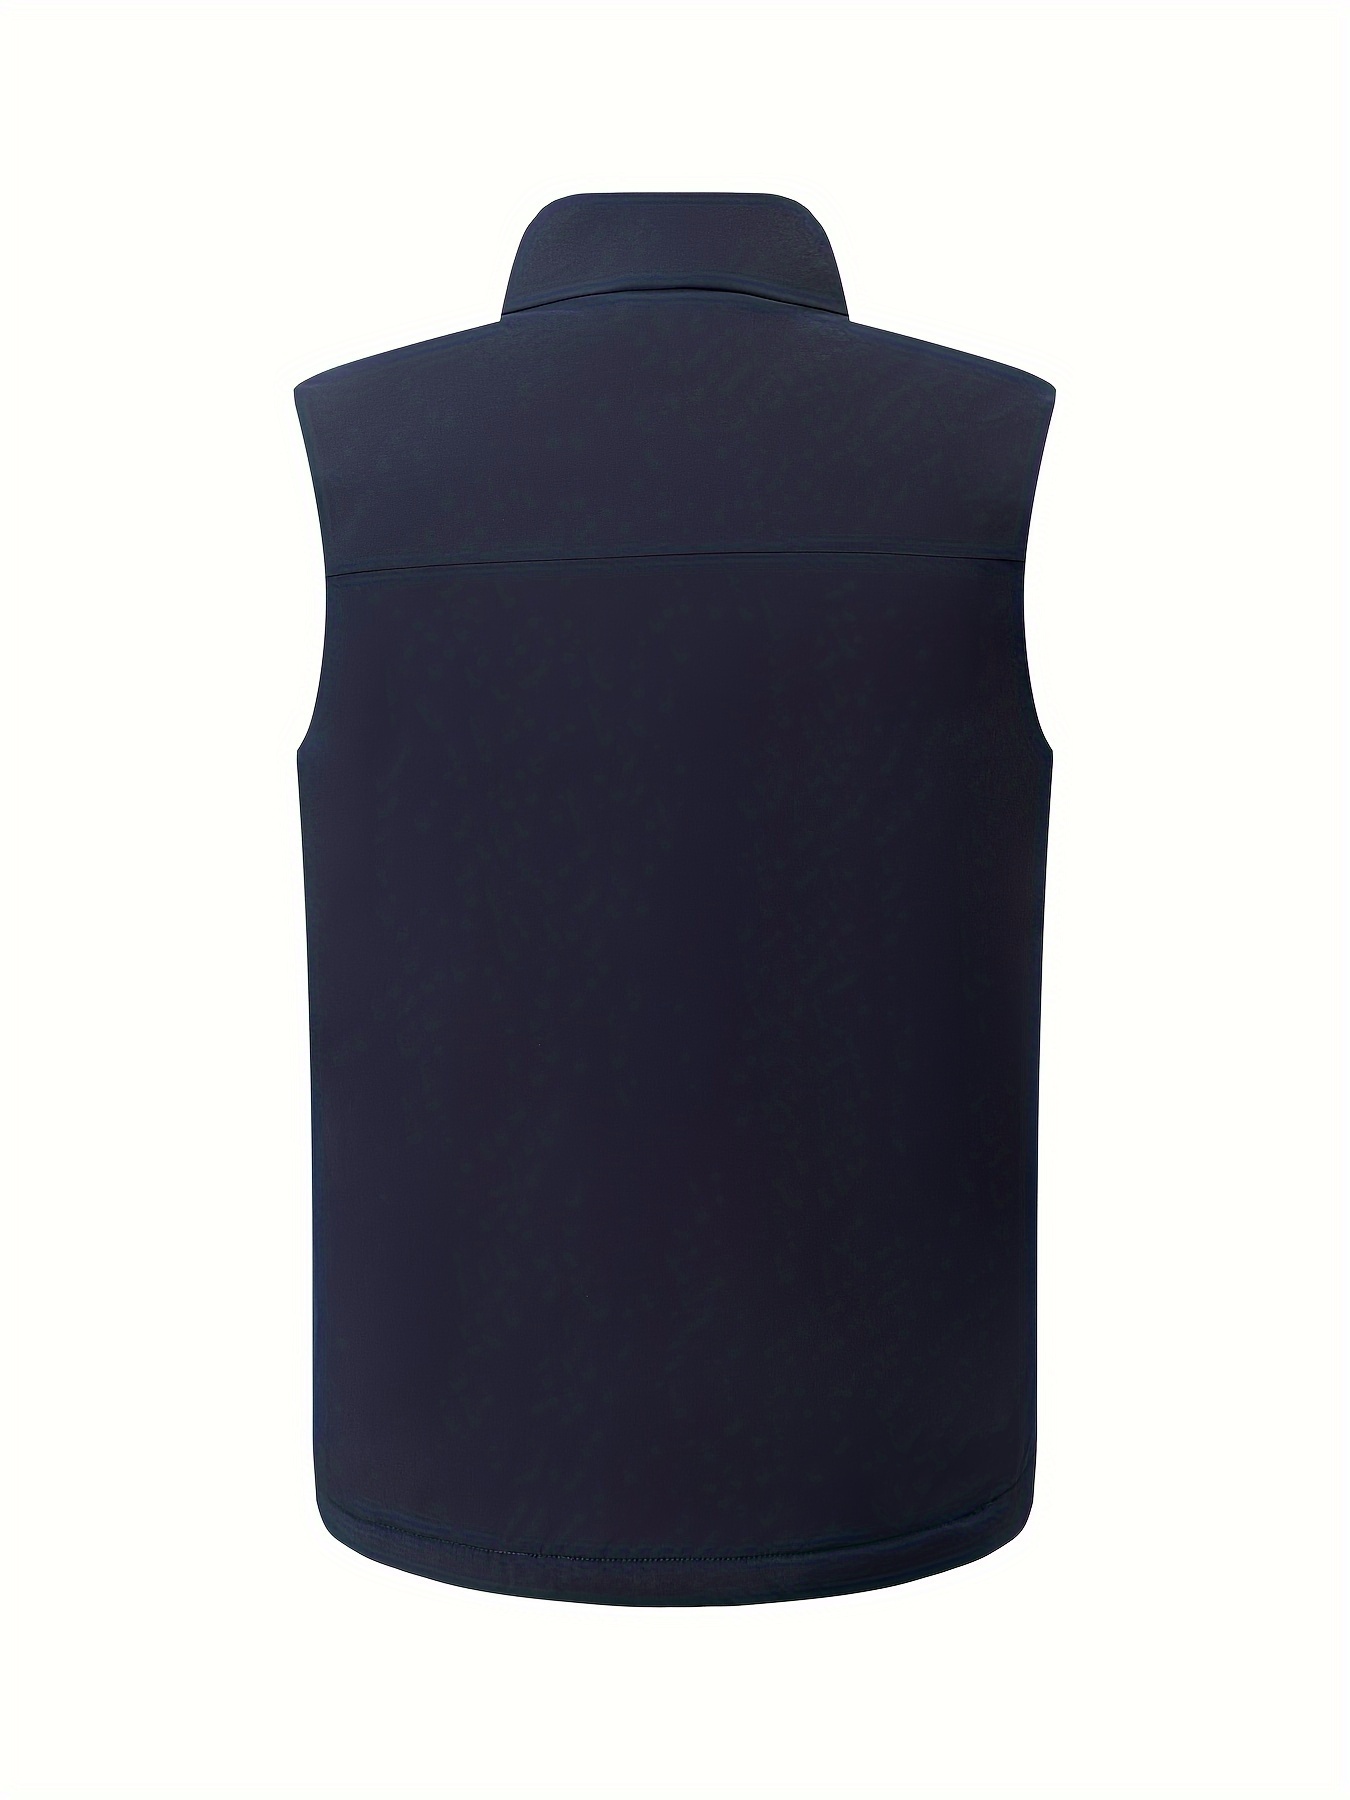 Plain Zip Front Sporty Jackets Sleeveless Pockets Slight - Temu